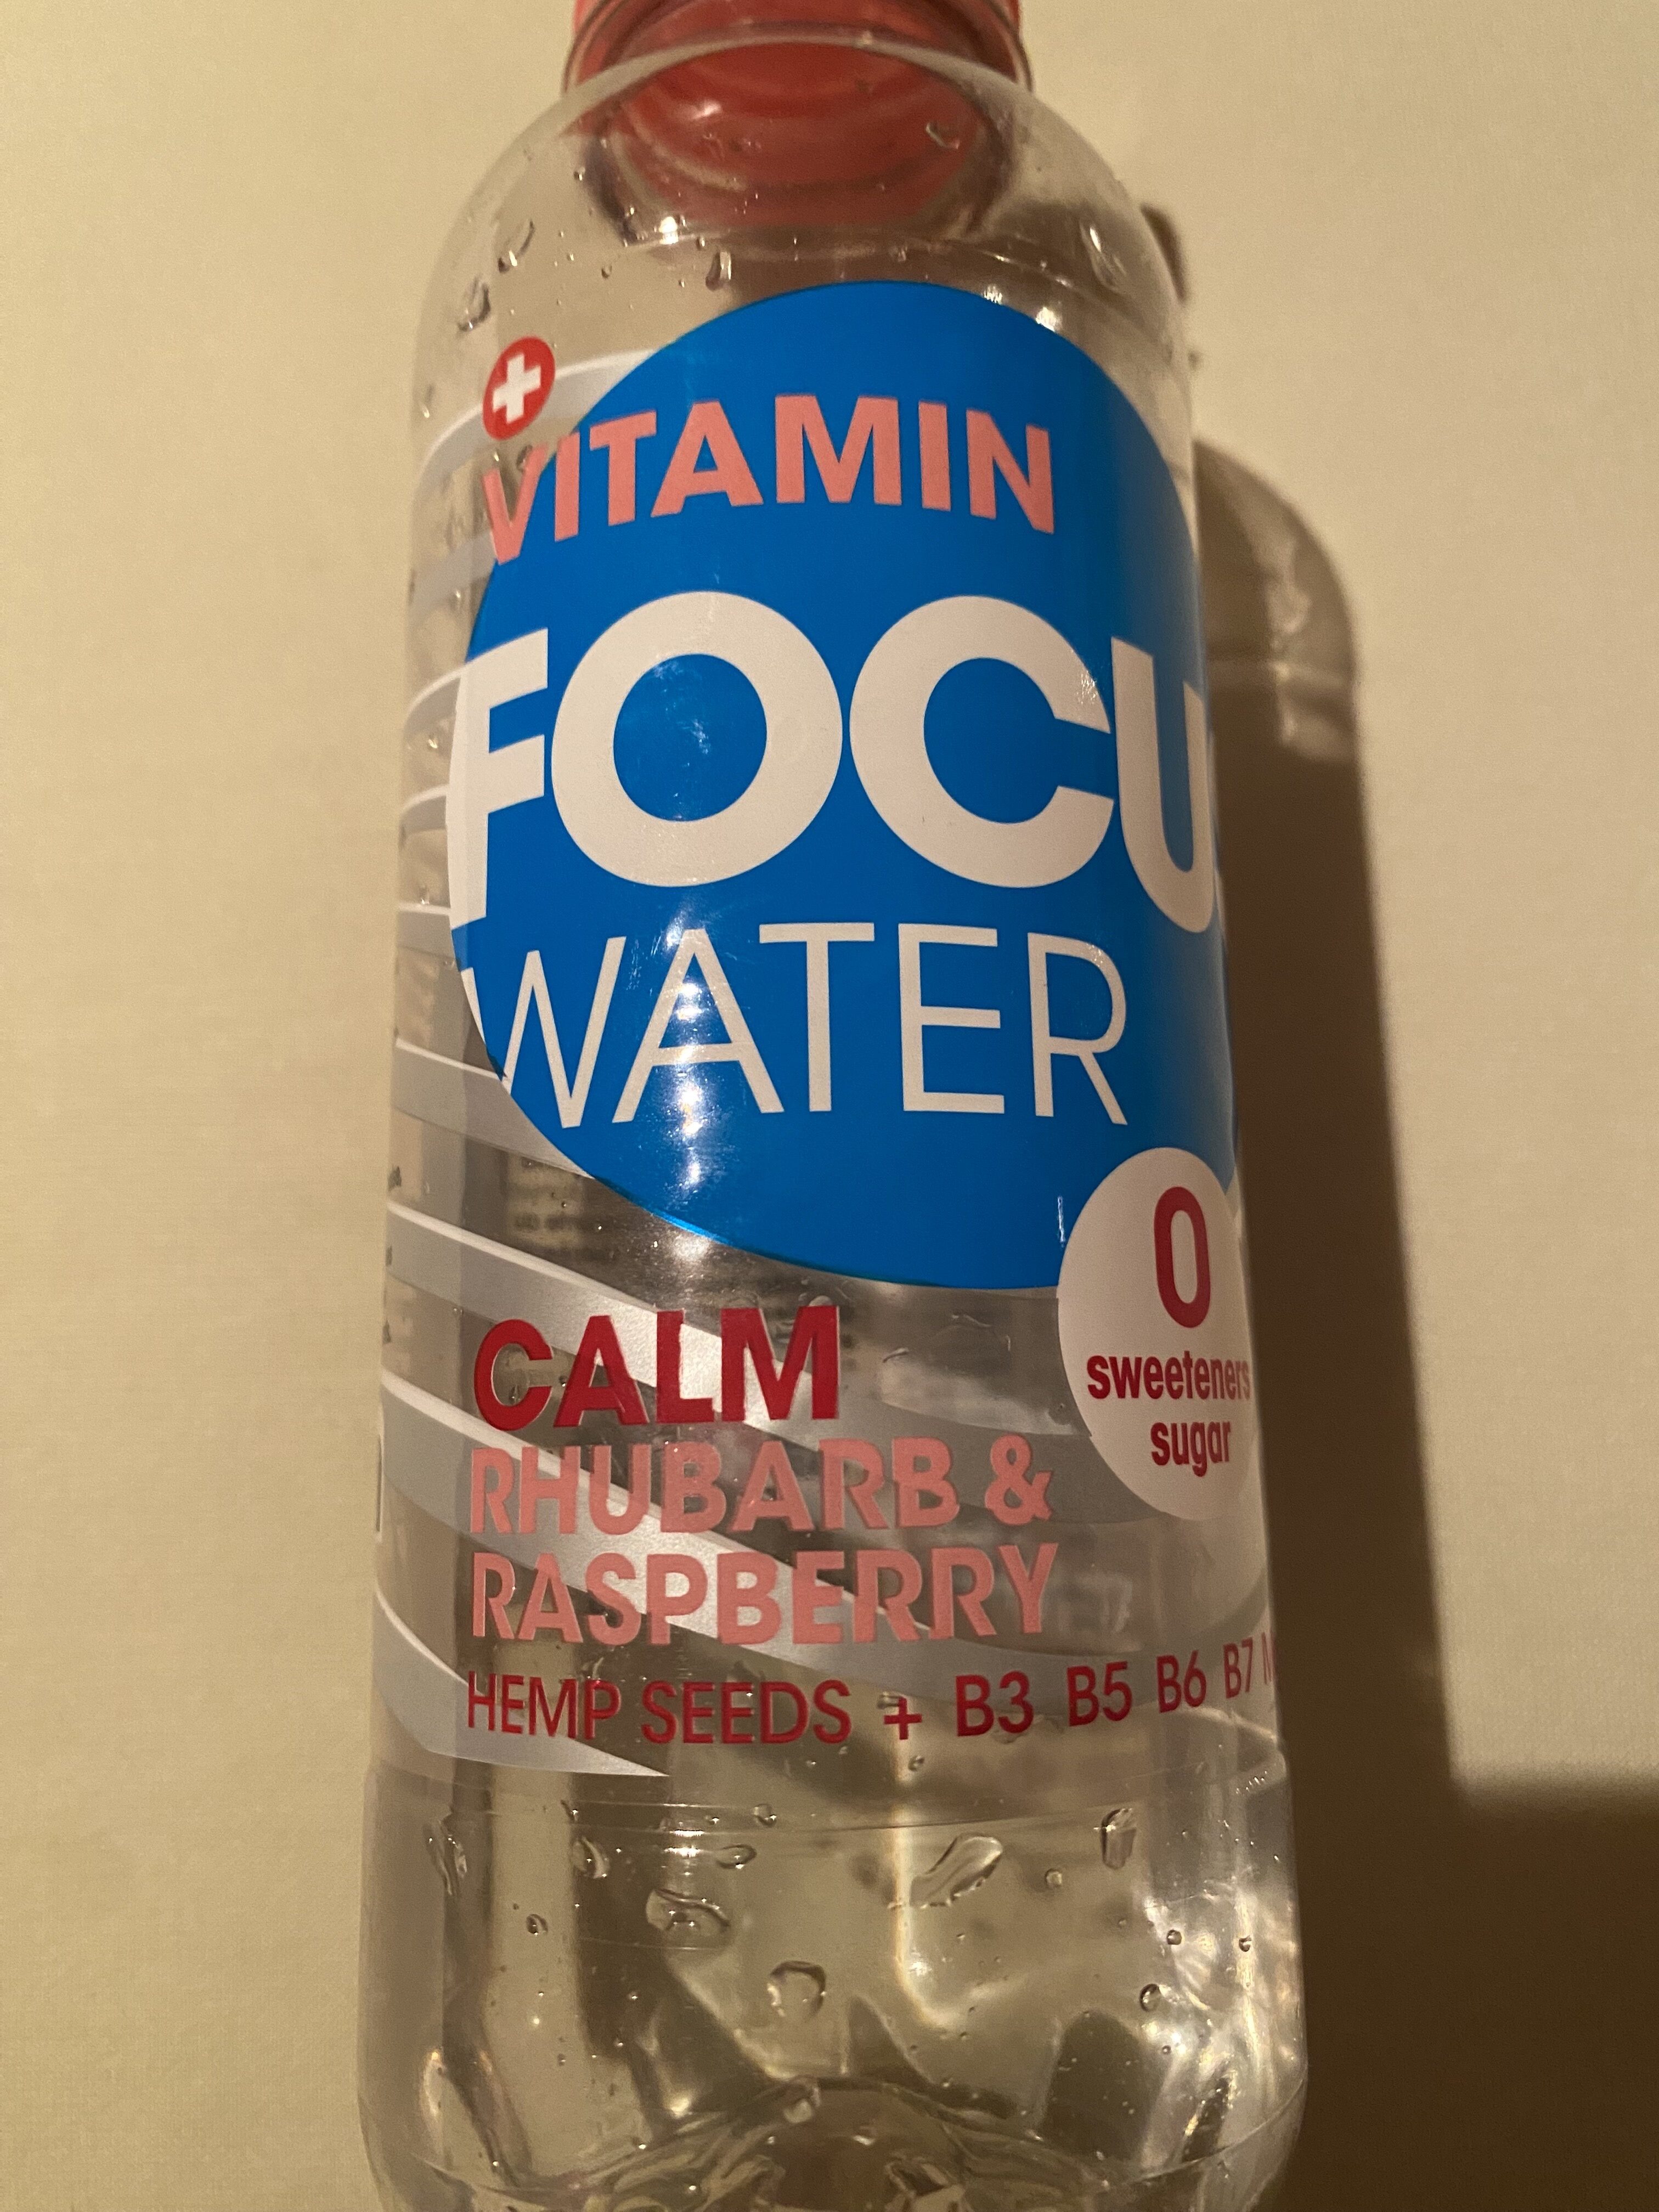 VitaminFocus Water - Produkt - en